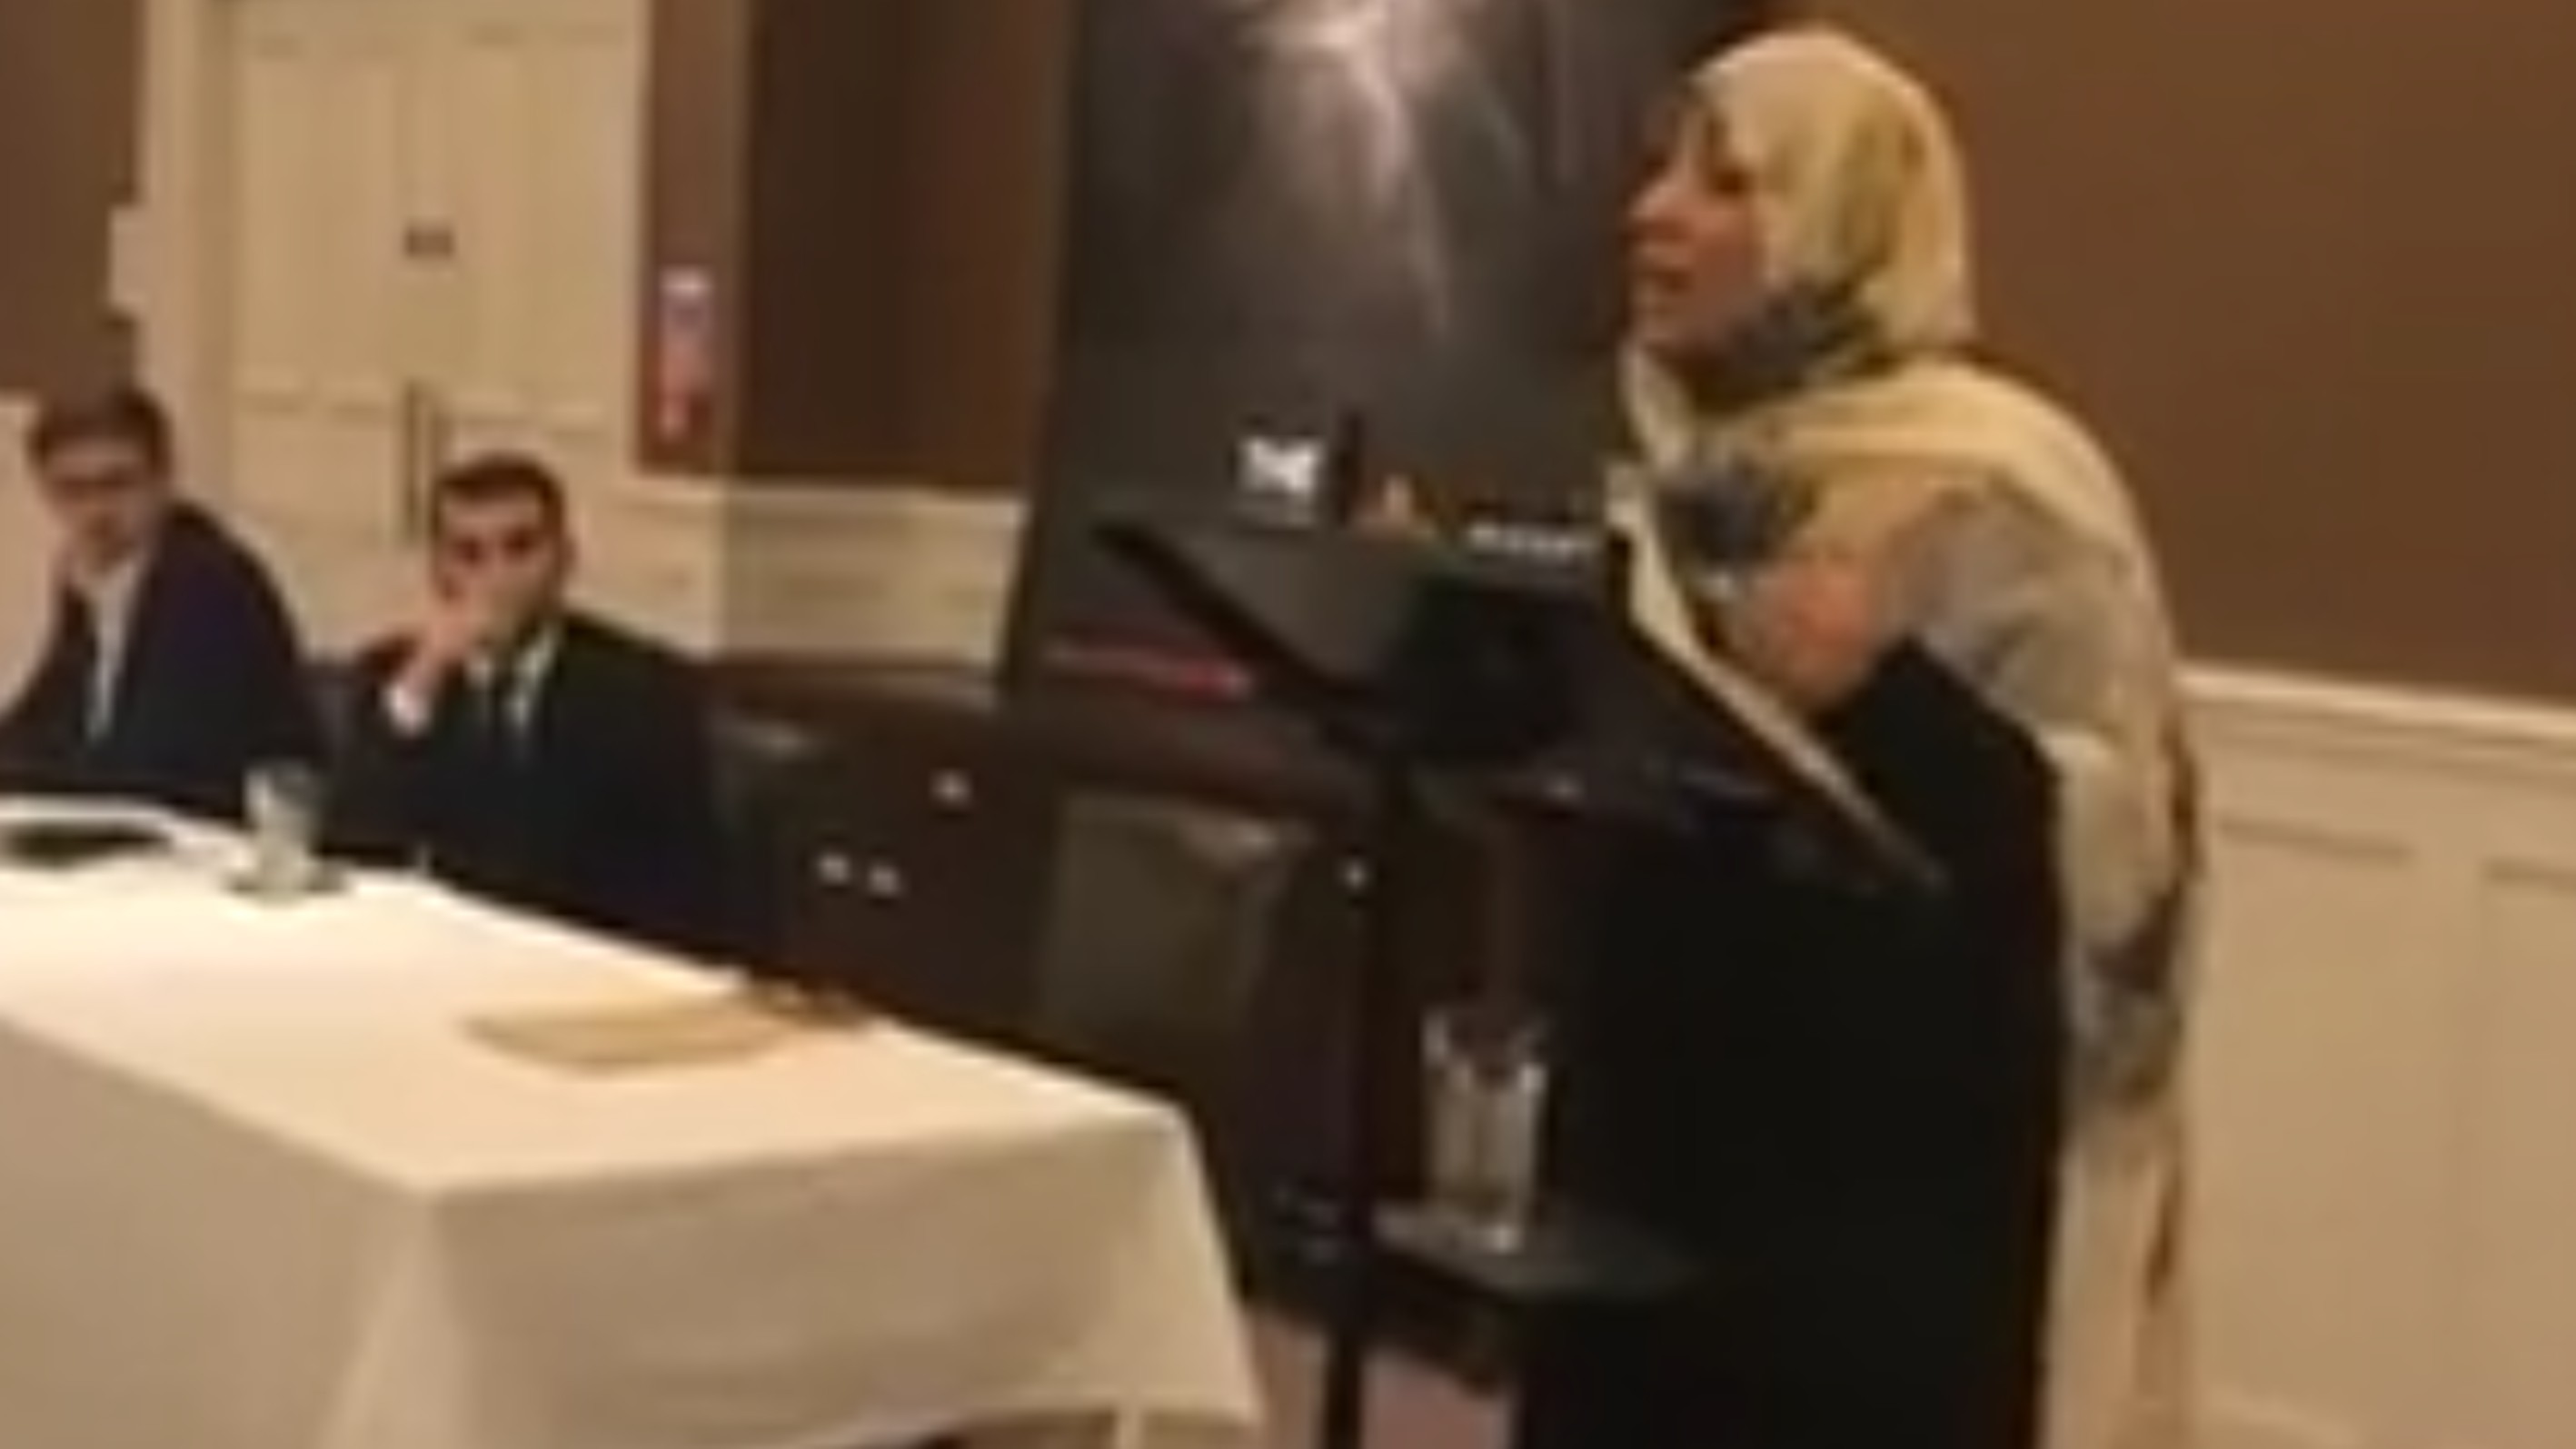 محاضرة الناشطة الحائزة على جائزة نوبل للسلام توكل كرمان في جامعة سانت اندروز بعنوان: ماذا يحدث في اليمن؟ - اسكتلندا